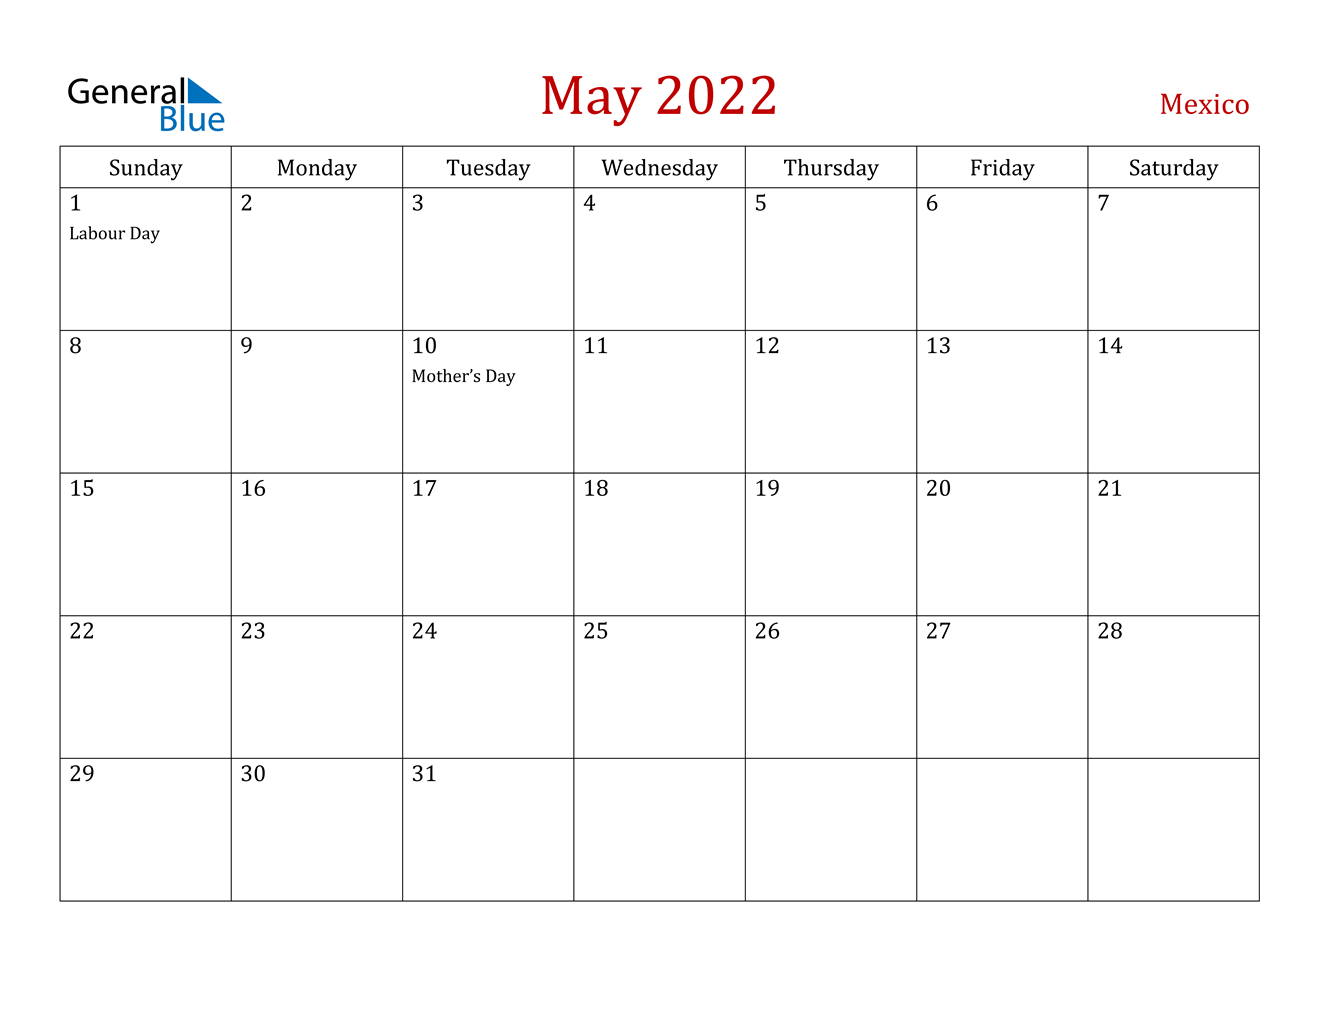 May 2022 Calendar - Mexico